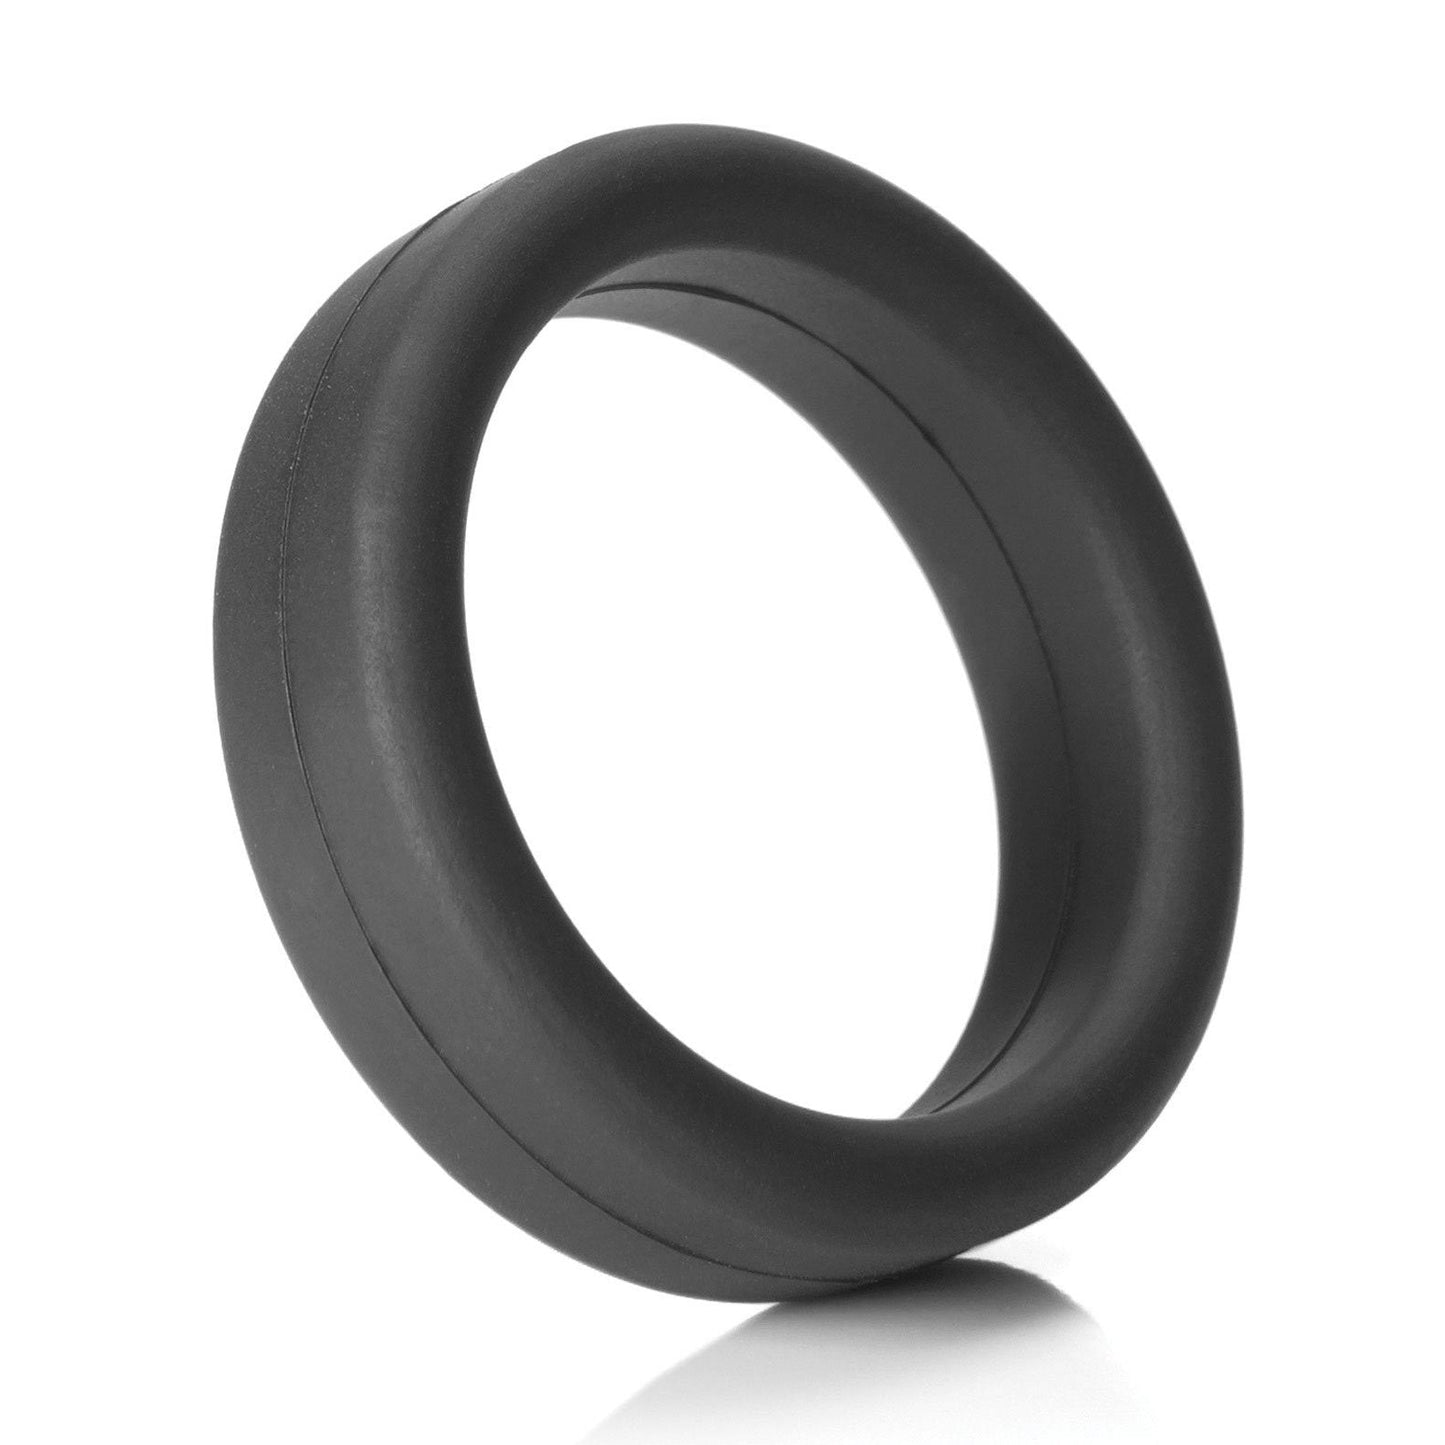 Tantus 1.5" Supersoft C Ring